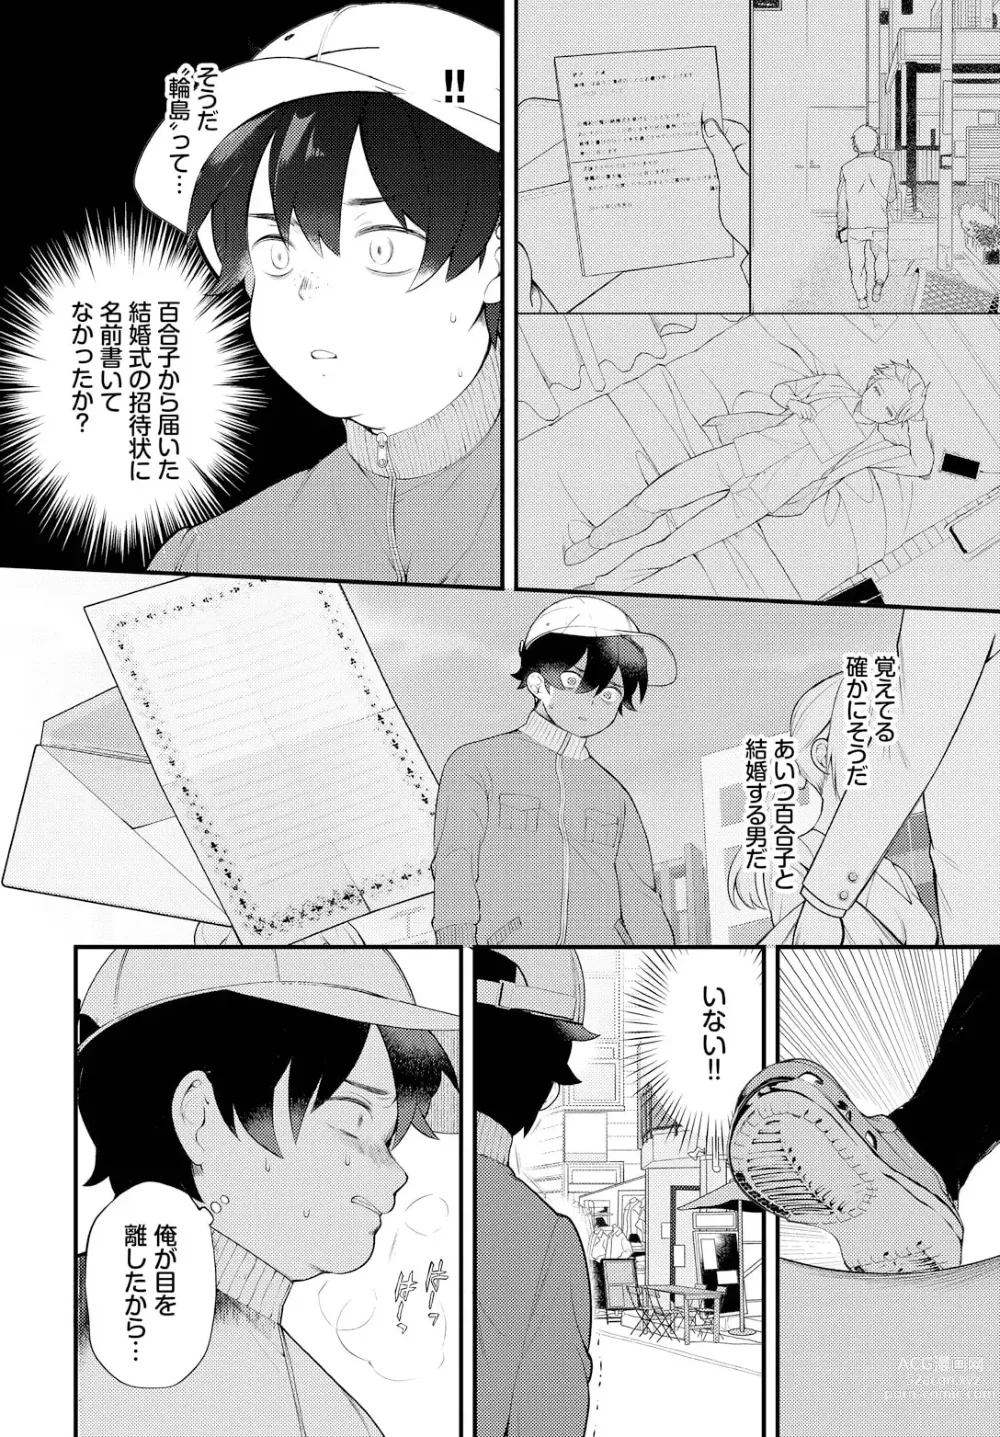 Page 6 of manga Zetsurin AV Danyuu, Time Leap de Seishun Musou! ~Ore no Mirai ga Ugokidasu~ ch.8